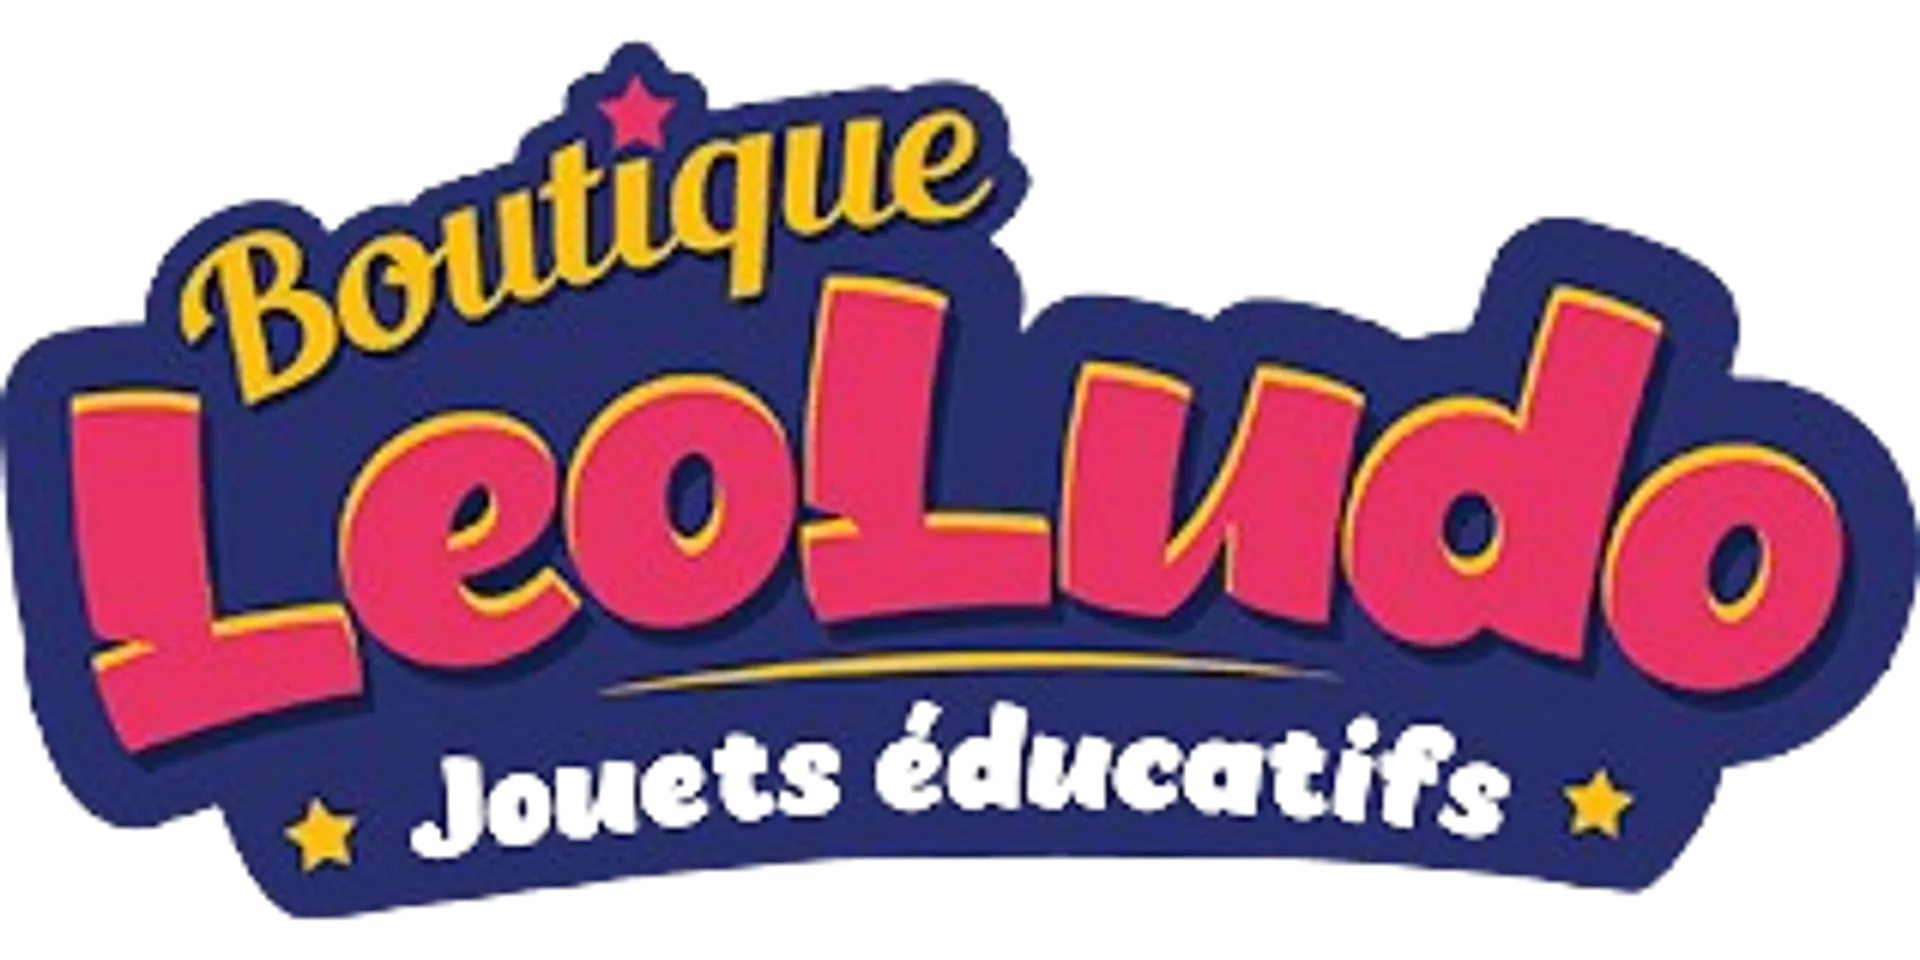 BOUTIQUE LEOLUDO logo de circulaire